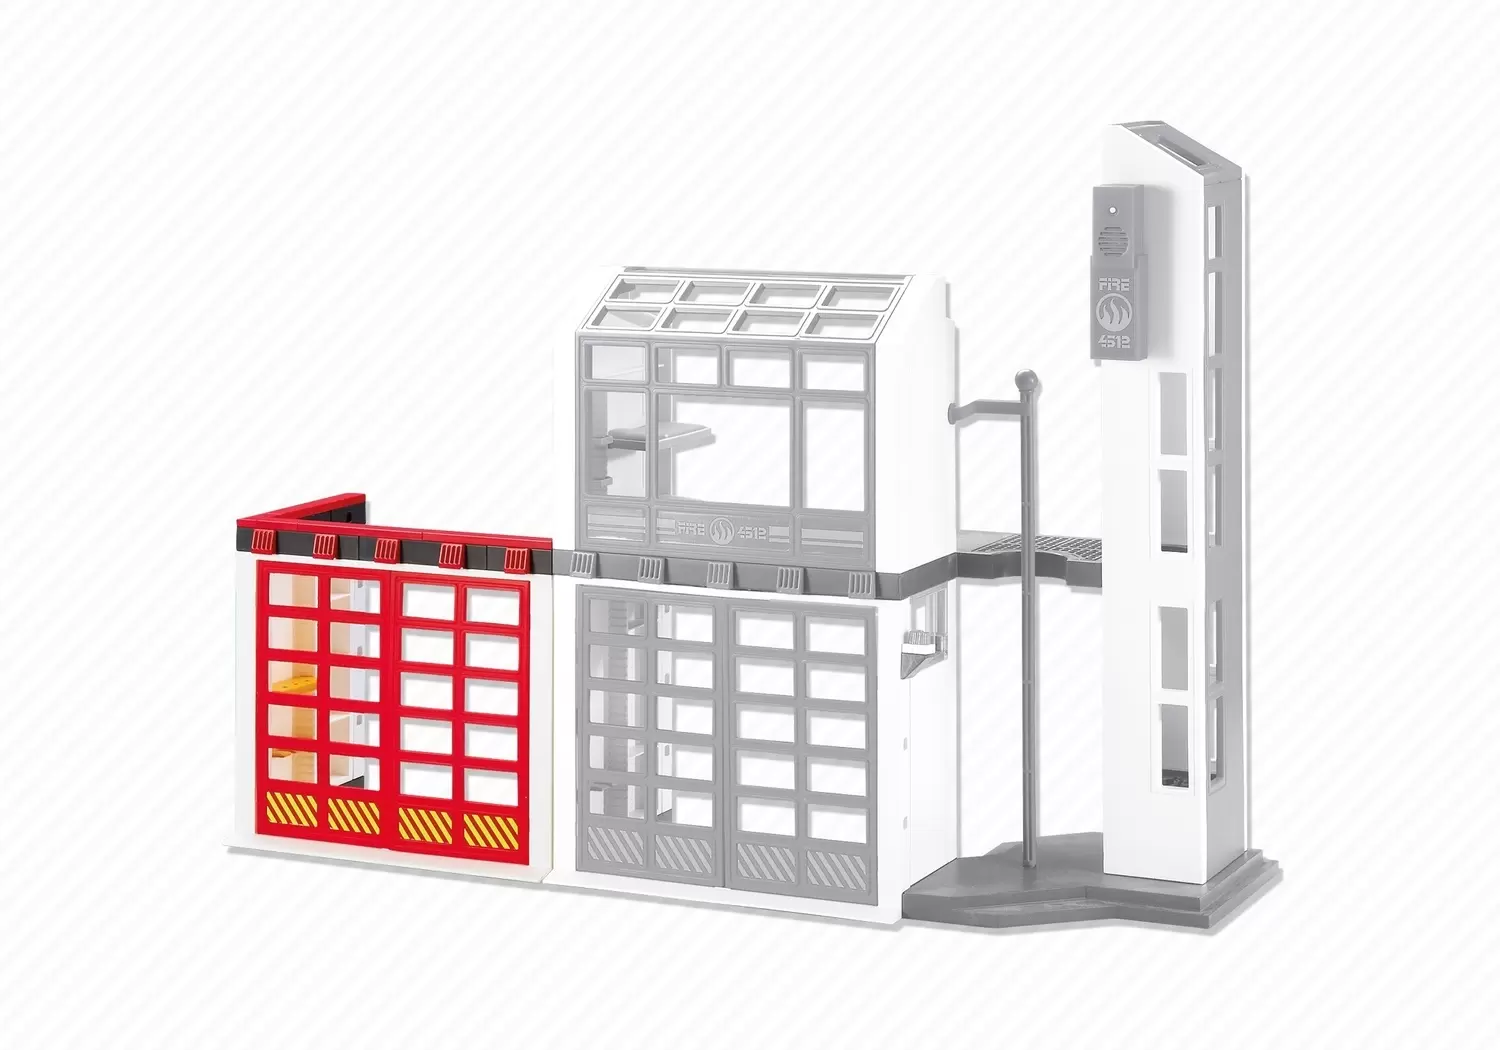 Accessoires & décorations Playmobil - Porte supplémentaire pour caserne de pompiers avec alarme